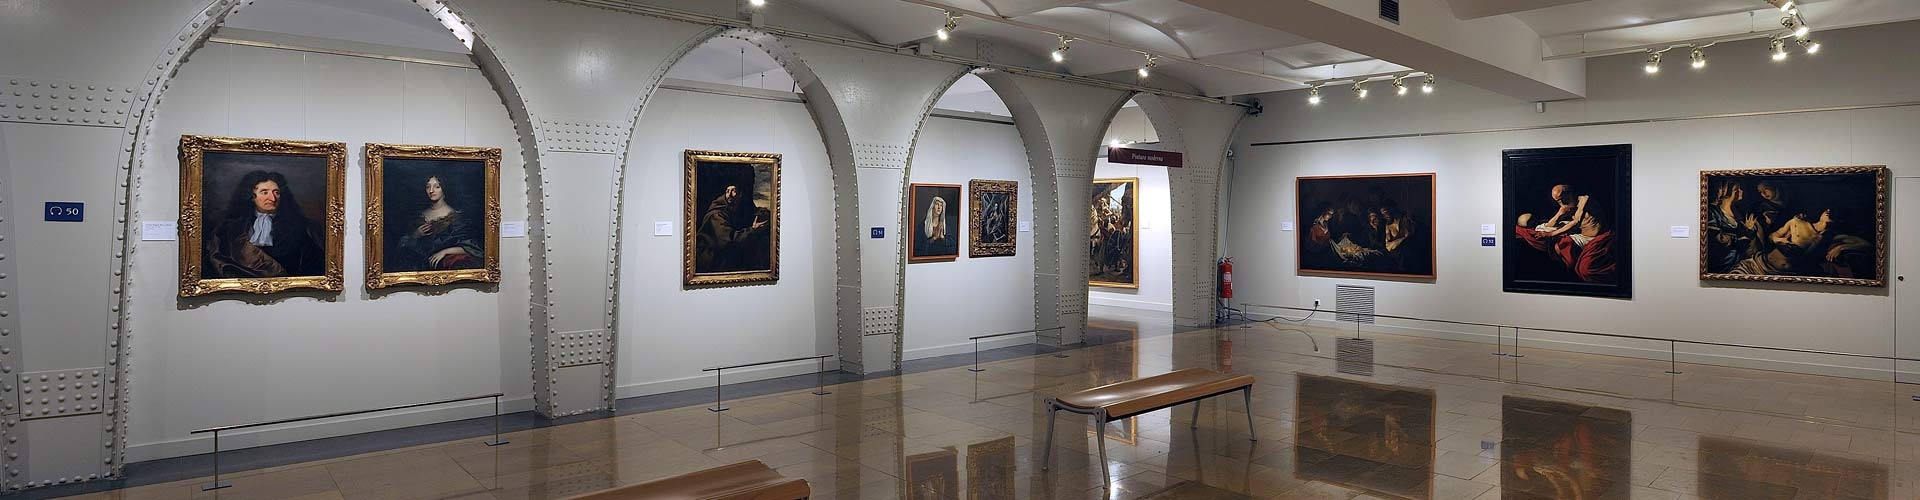 Musée de Montserrat